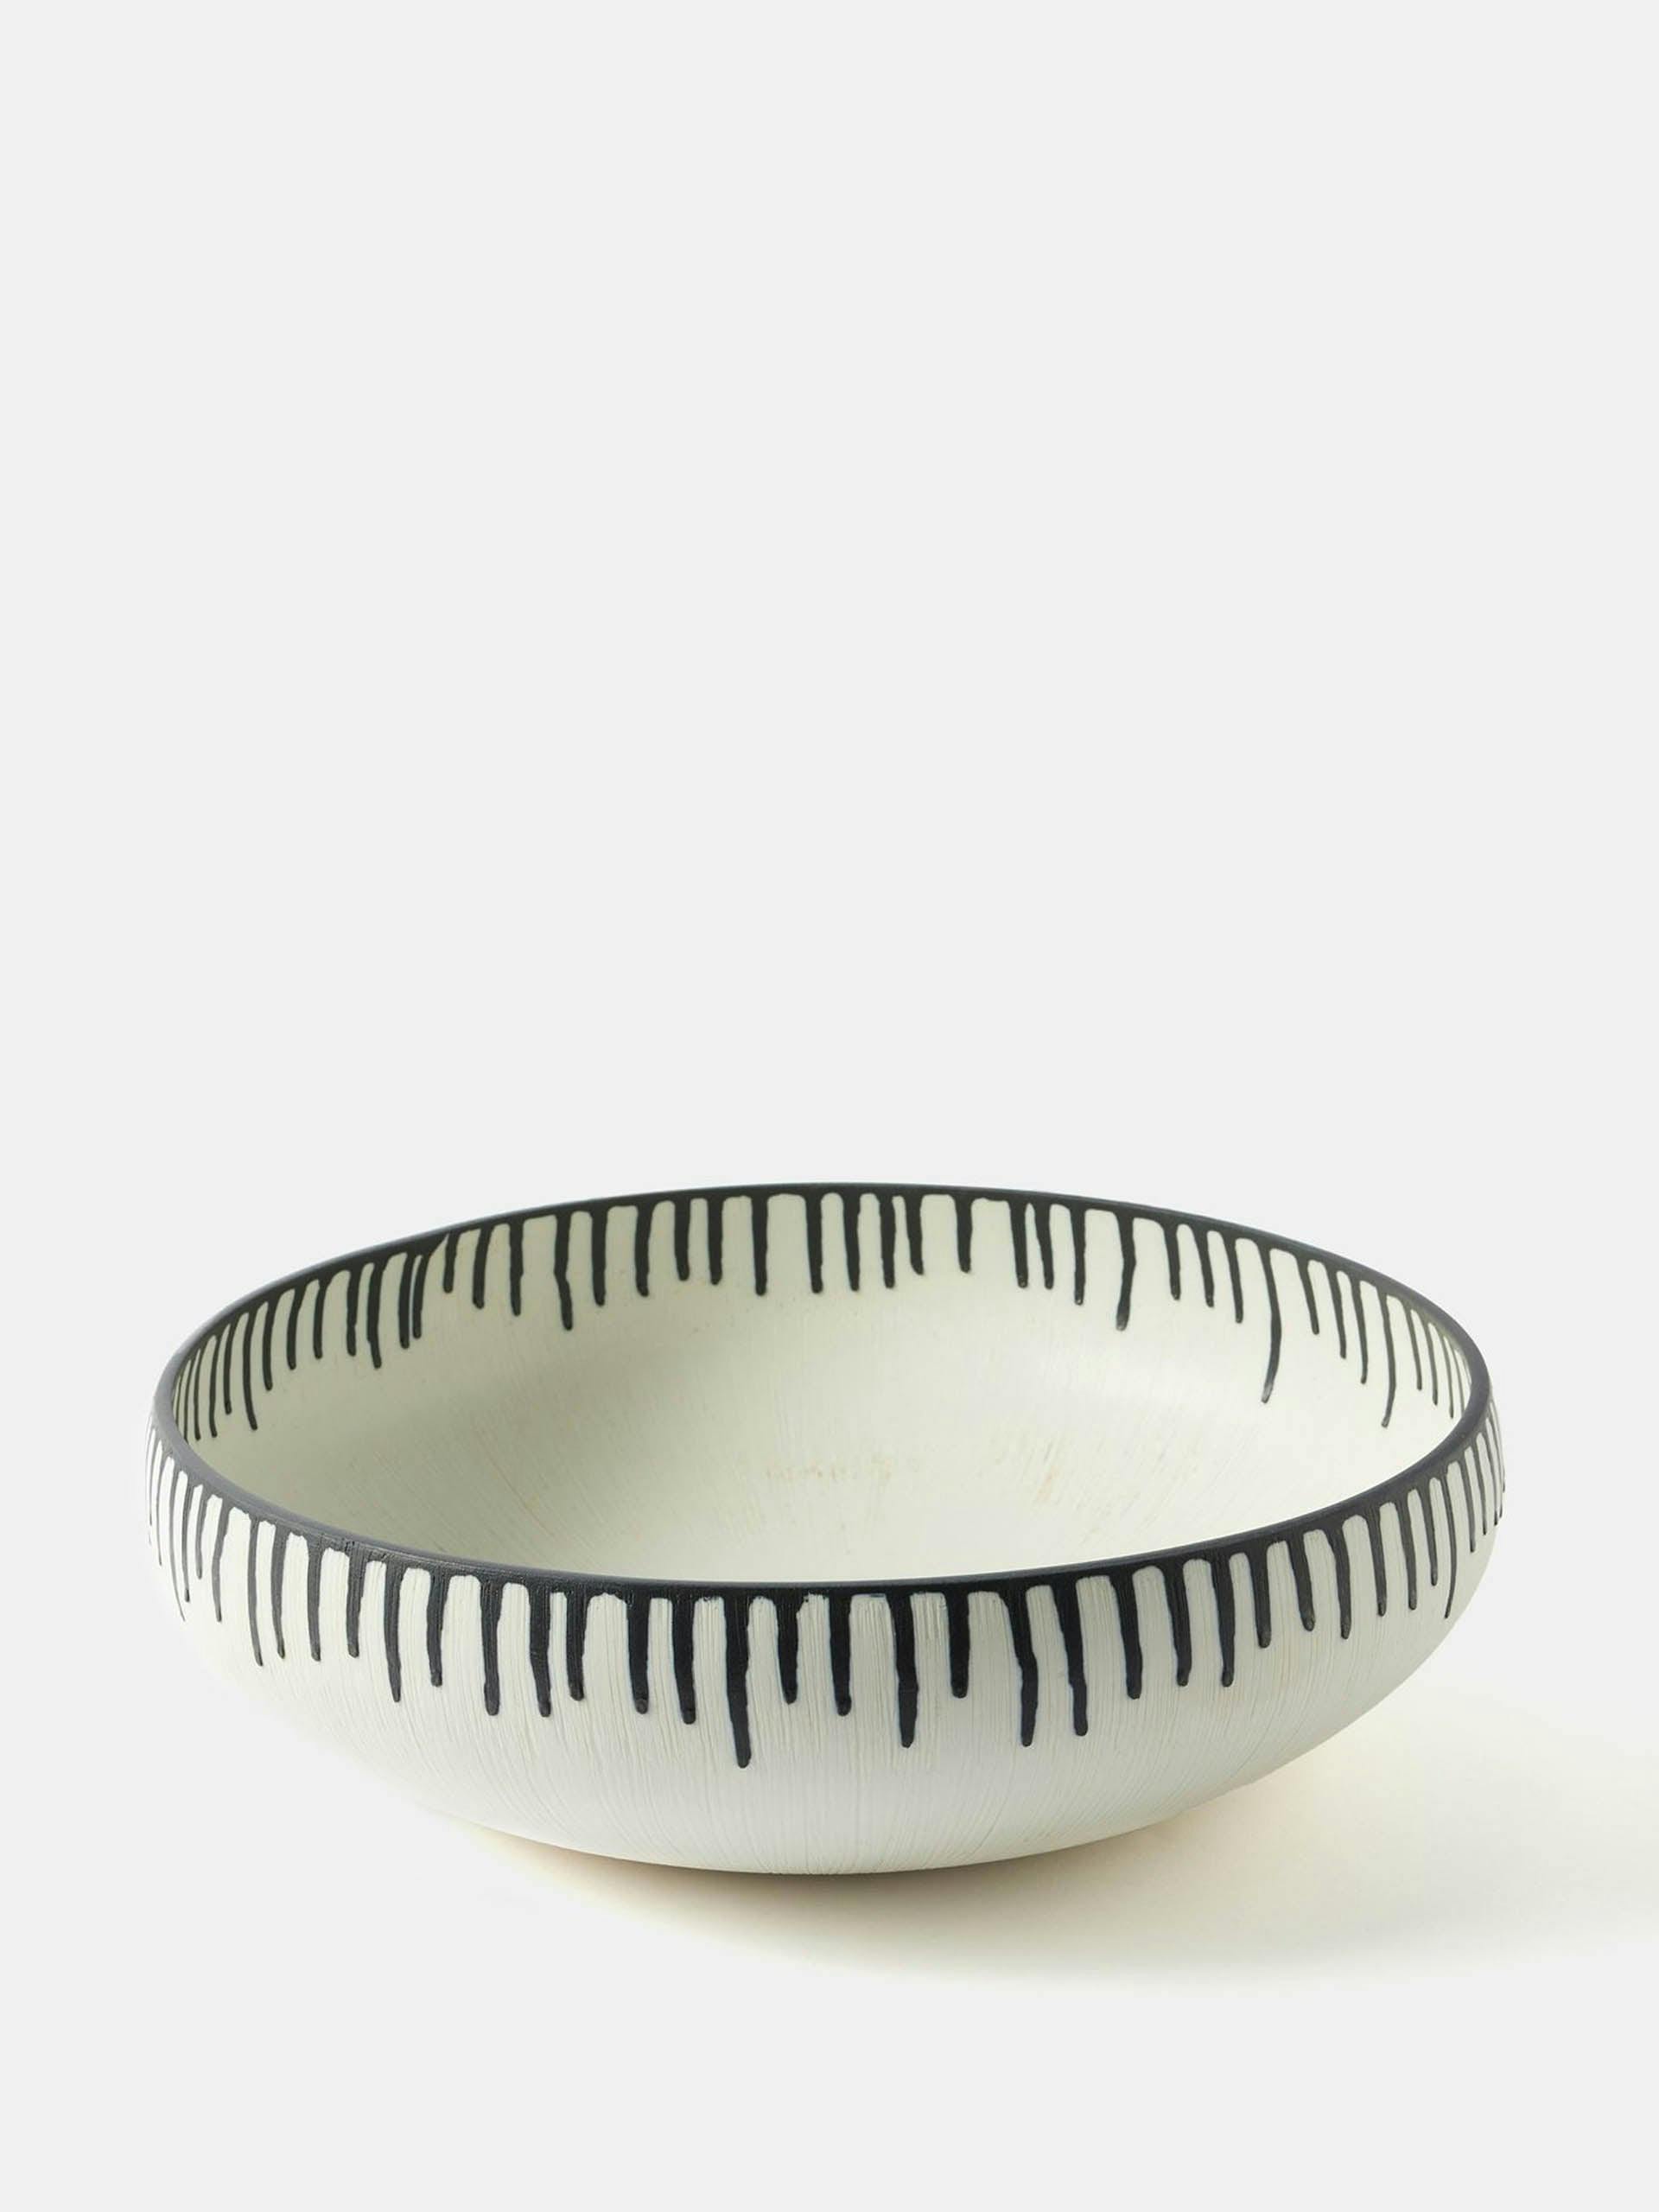 Tokasu large hand-painted porcelain bowl